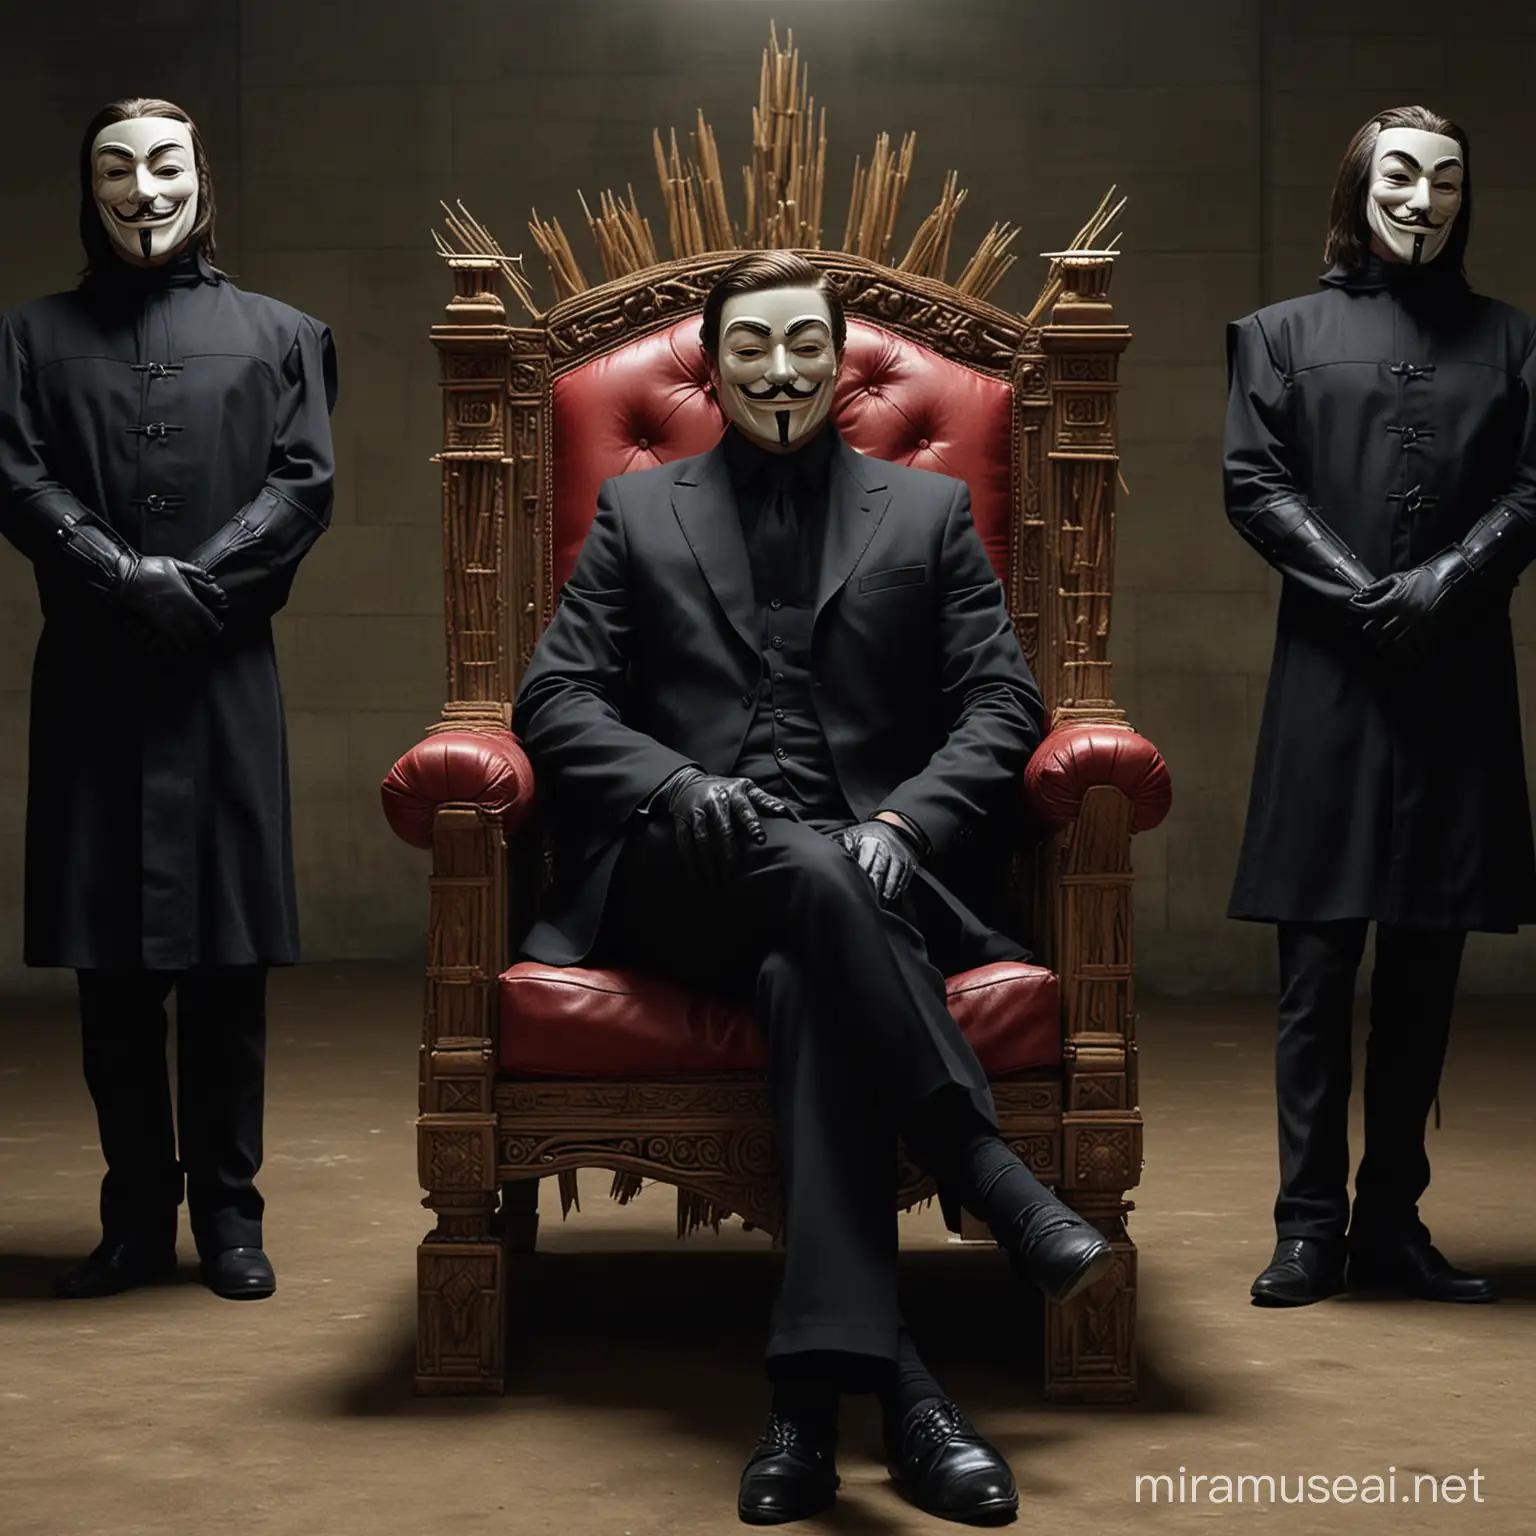 V for Vendetta Sitting on Elegant Throne in Suit